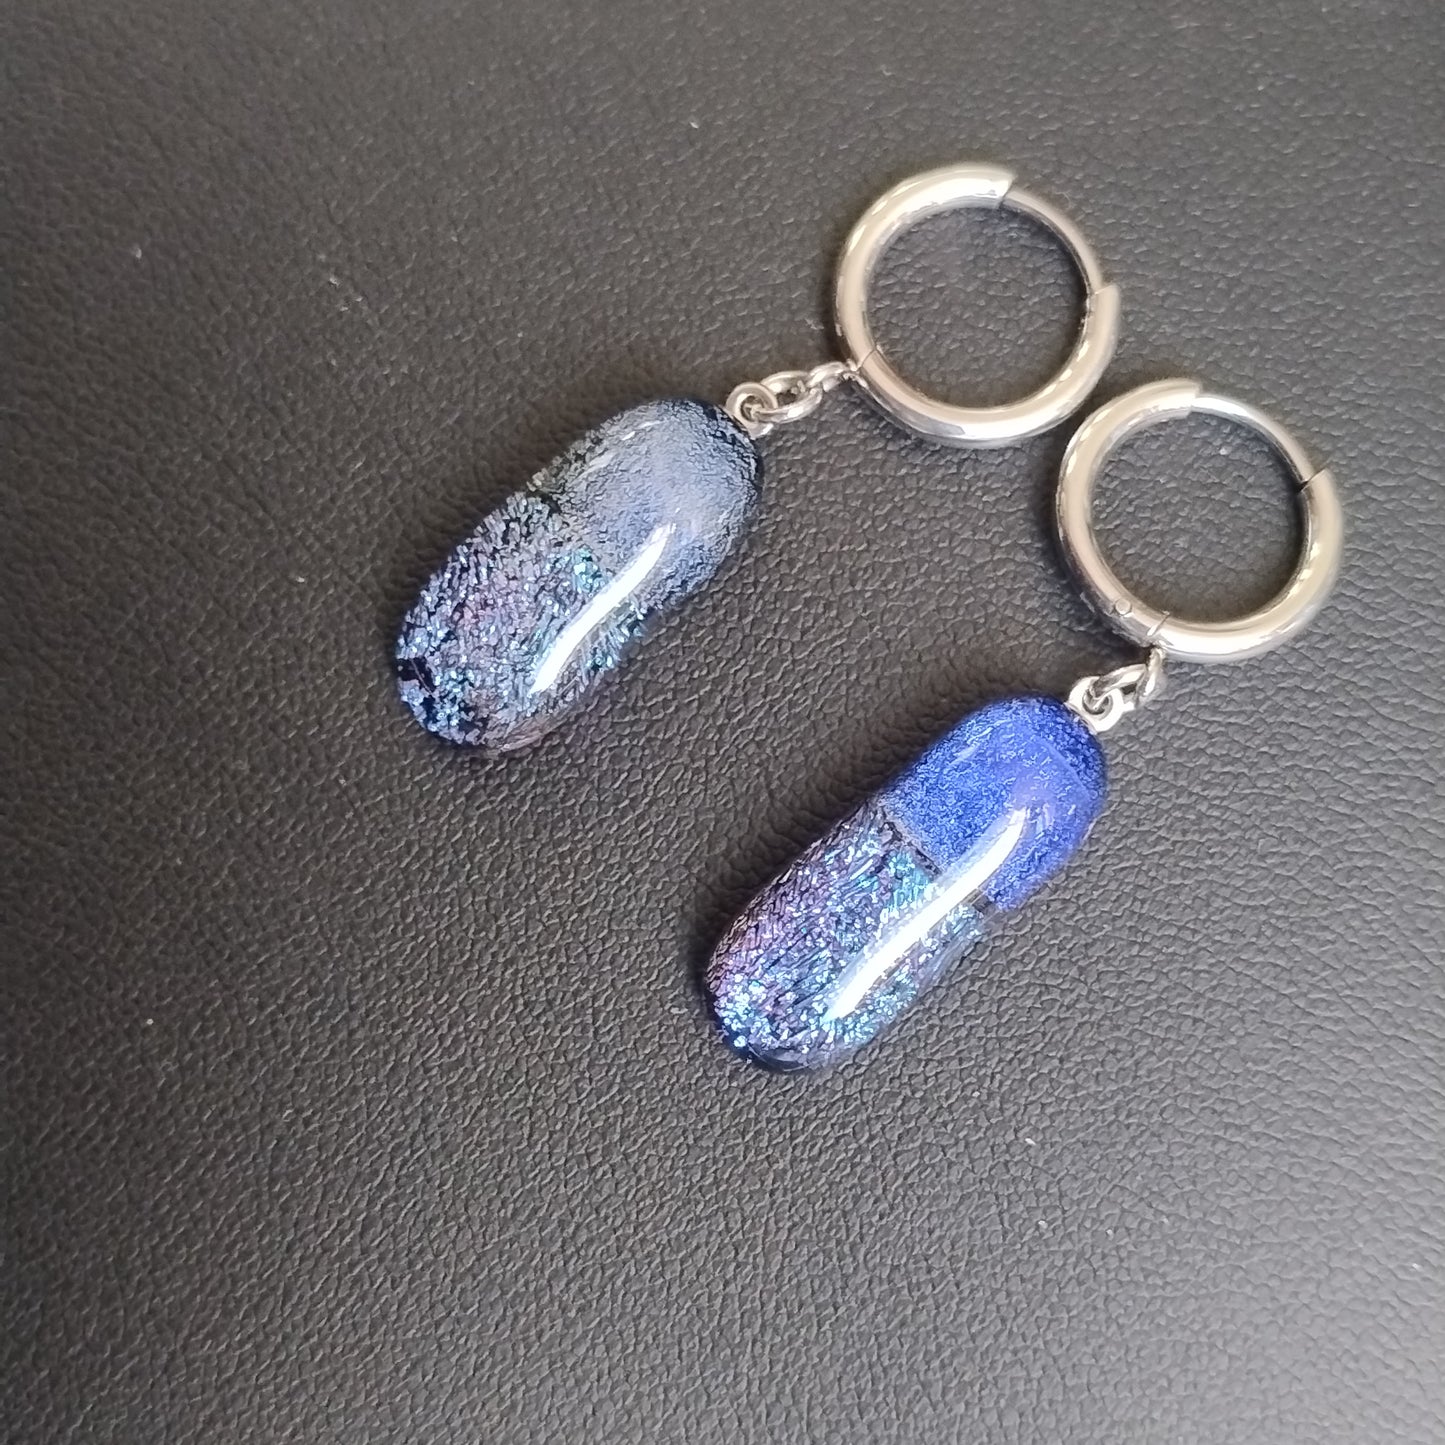 Boucles d'oreilles créoles verre dichroïque bleu LEIA&CO